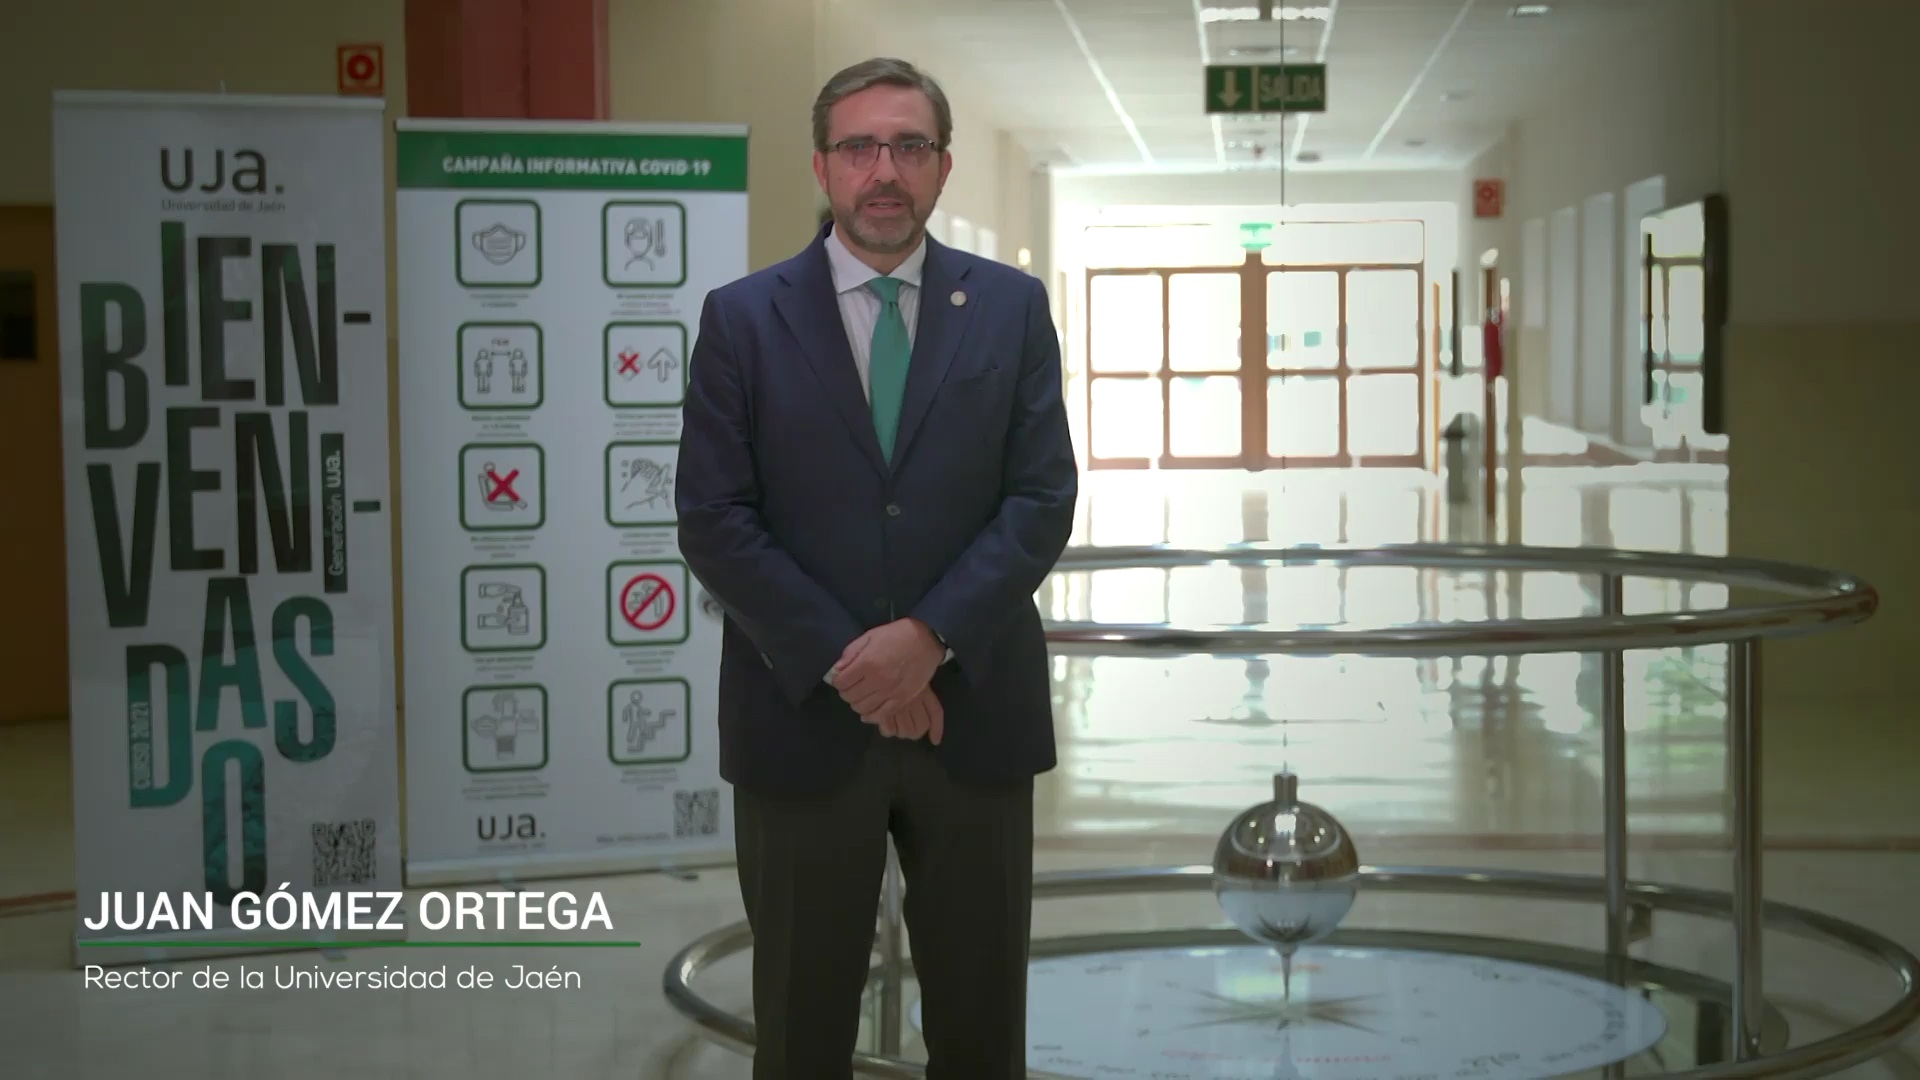 Mensaje de Bienvenida Rector de la Universidad de Jaén